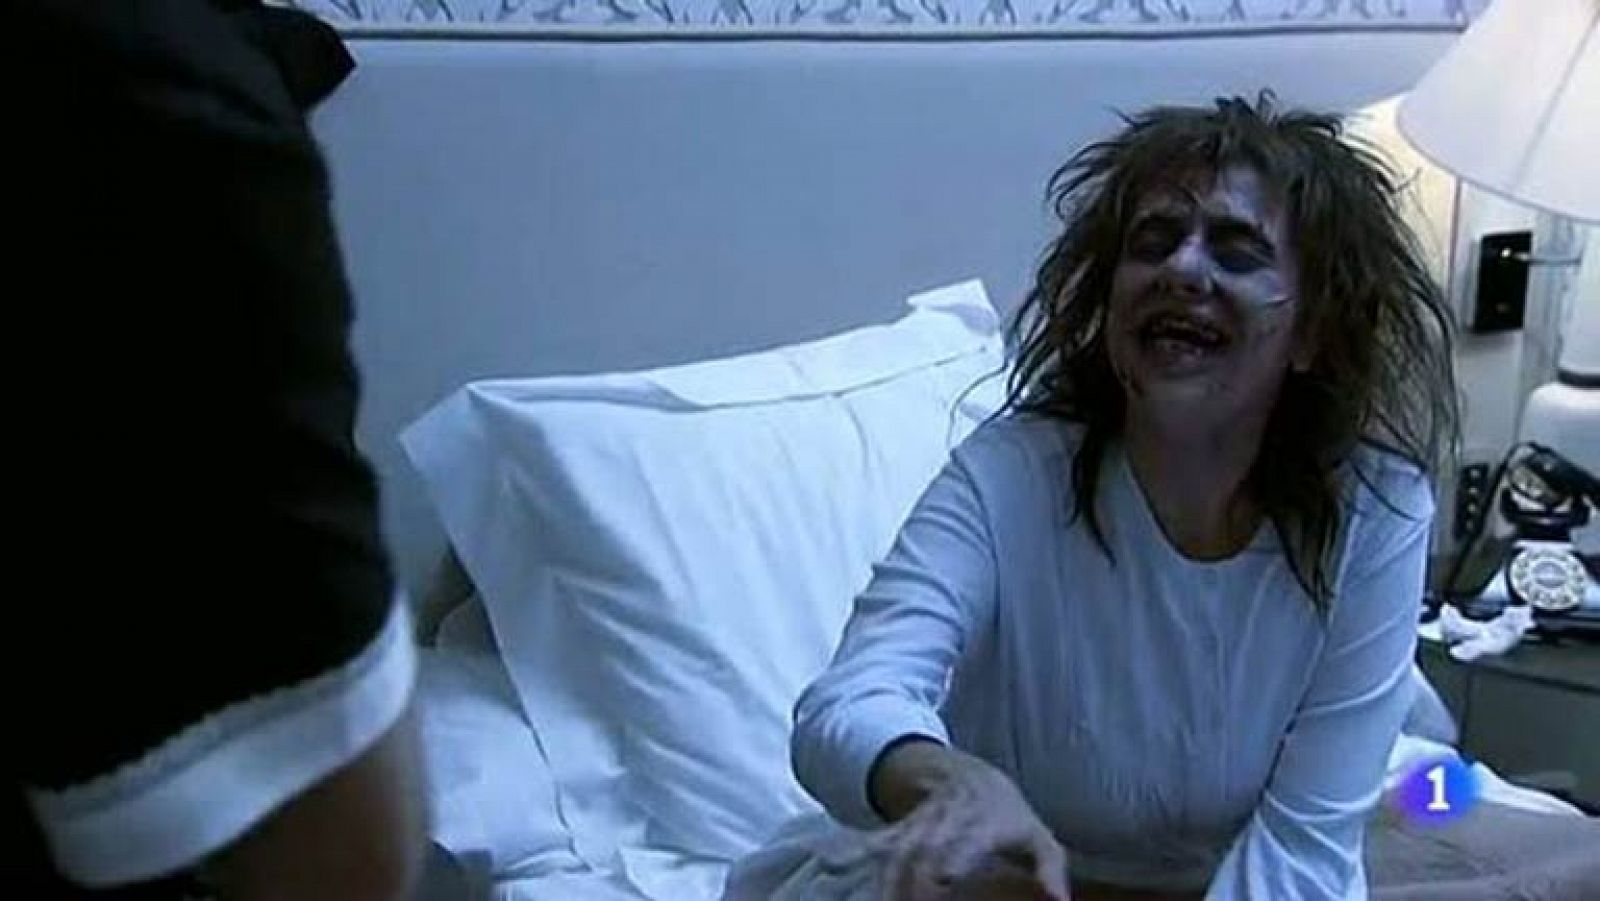 Especial Nochevieja 2012 - Hotel 13 estrellas 12 uvas - La niña del exorcista